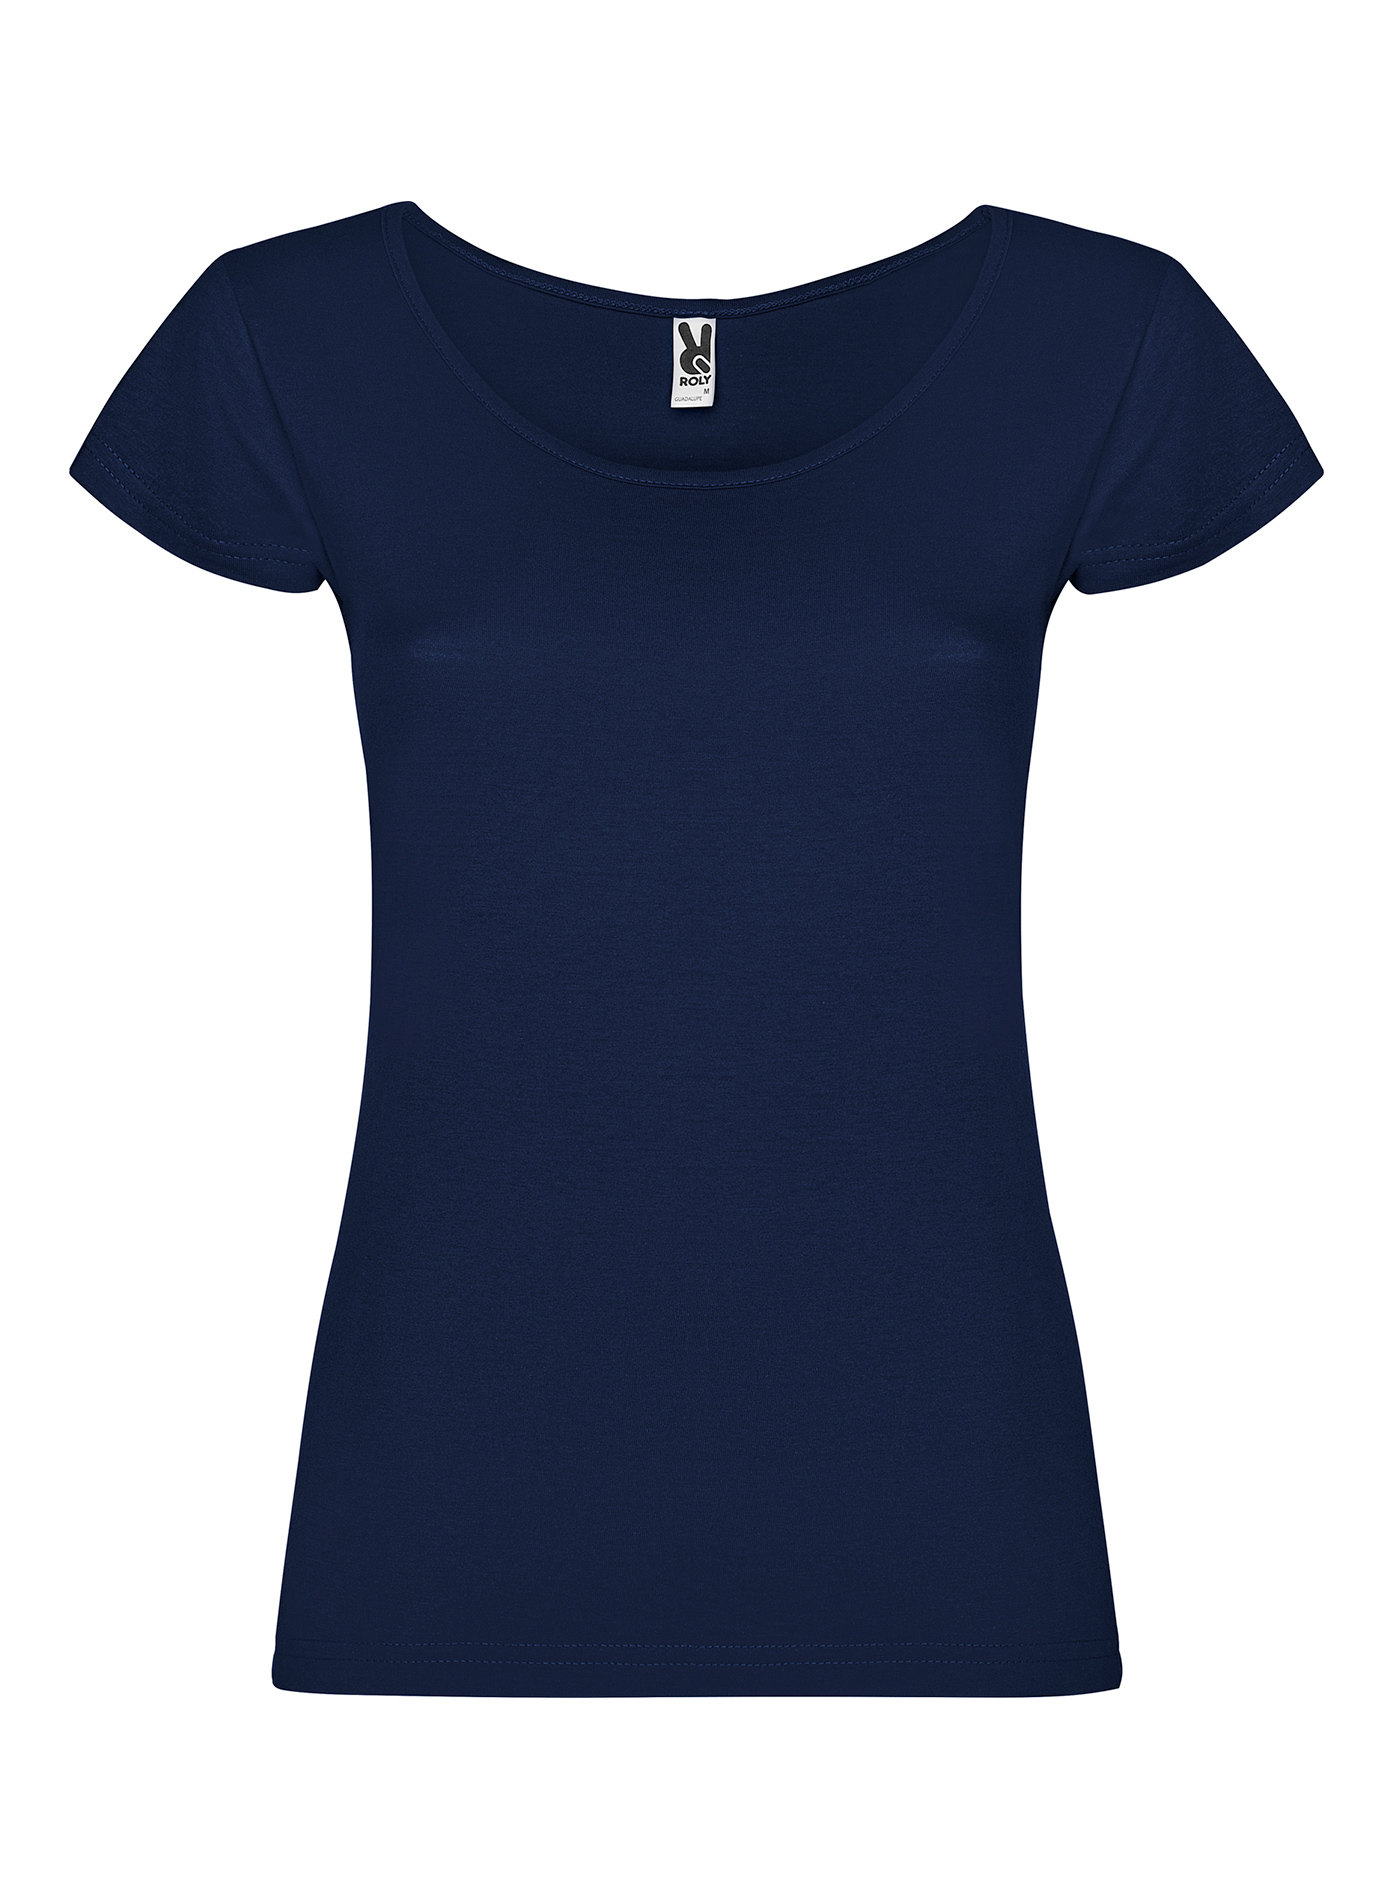 Dámské tričko Roly Guadalupe - Námořnická modrá S